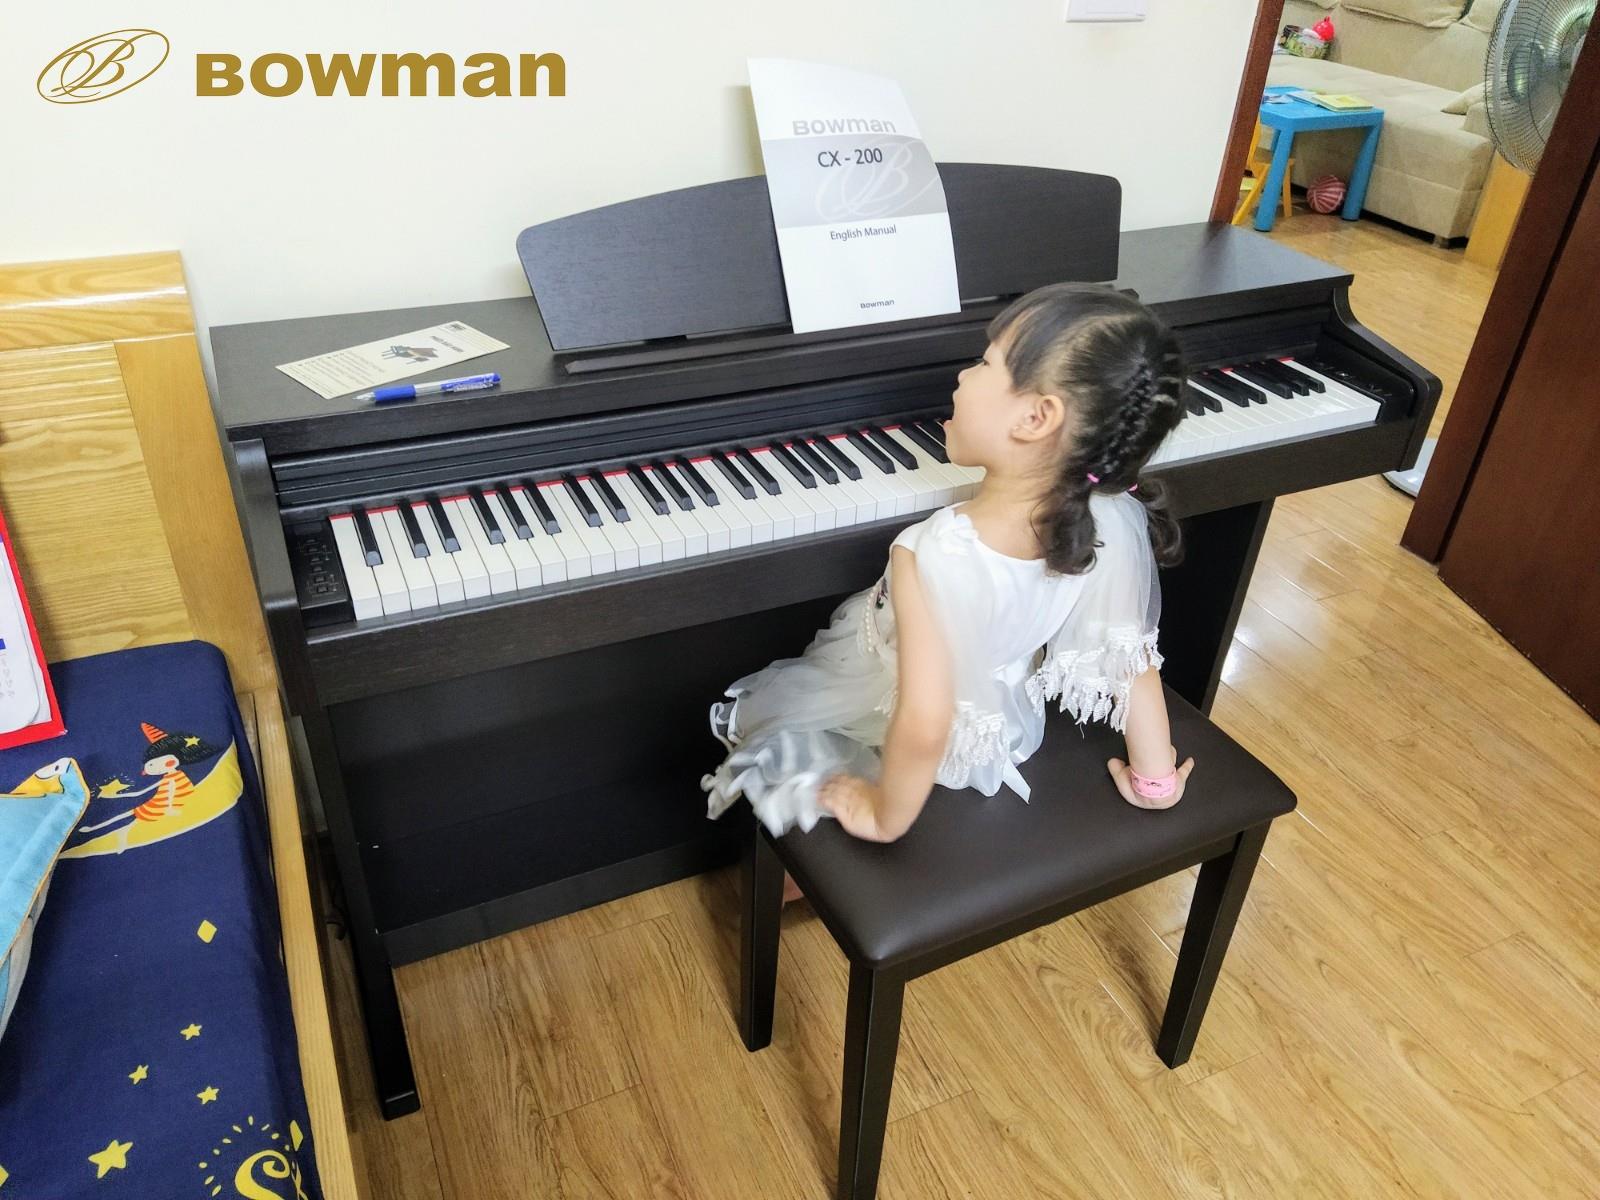 HỌC ĐÀN PIANO CÓ KHÓ KHÔNG??? - BowmanPIANO.com.vn